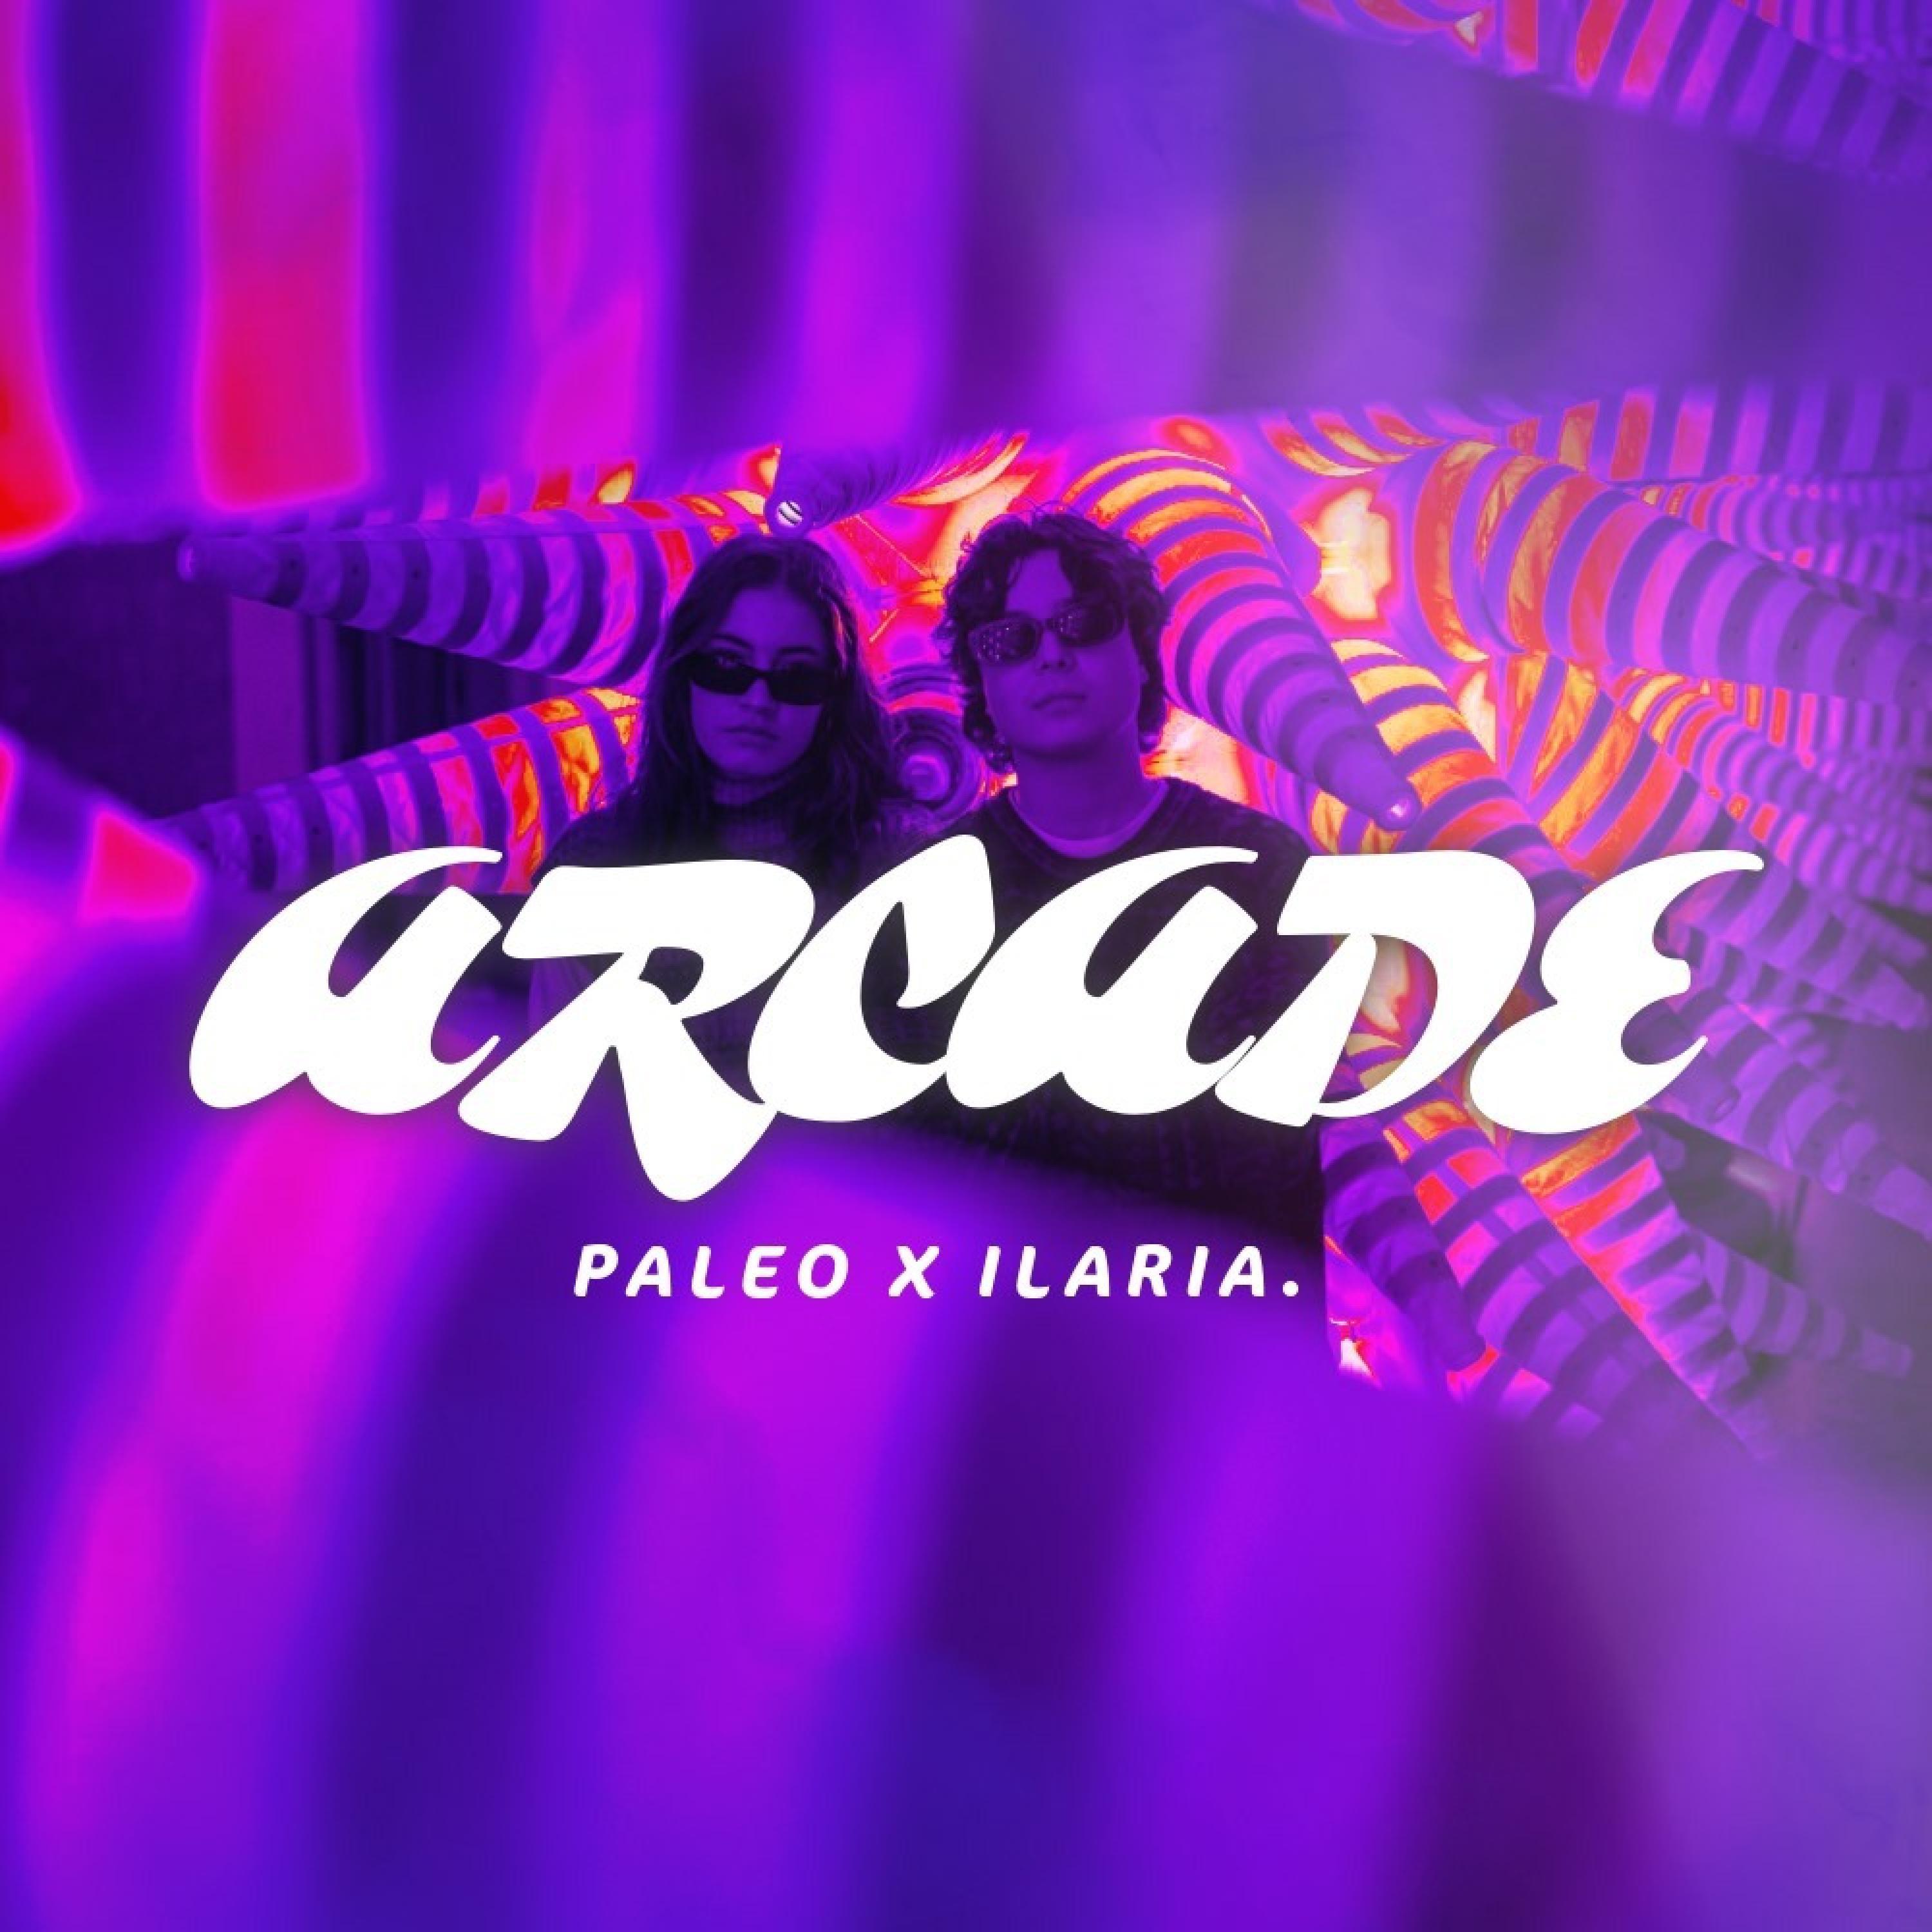 Paleo Q - Arcade (feat. Ilaria.)